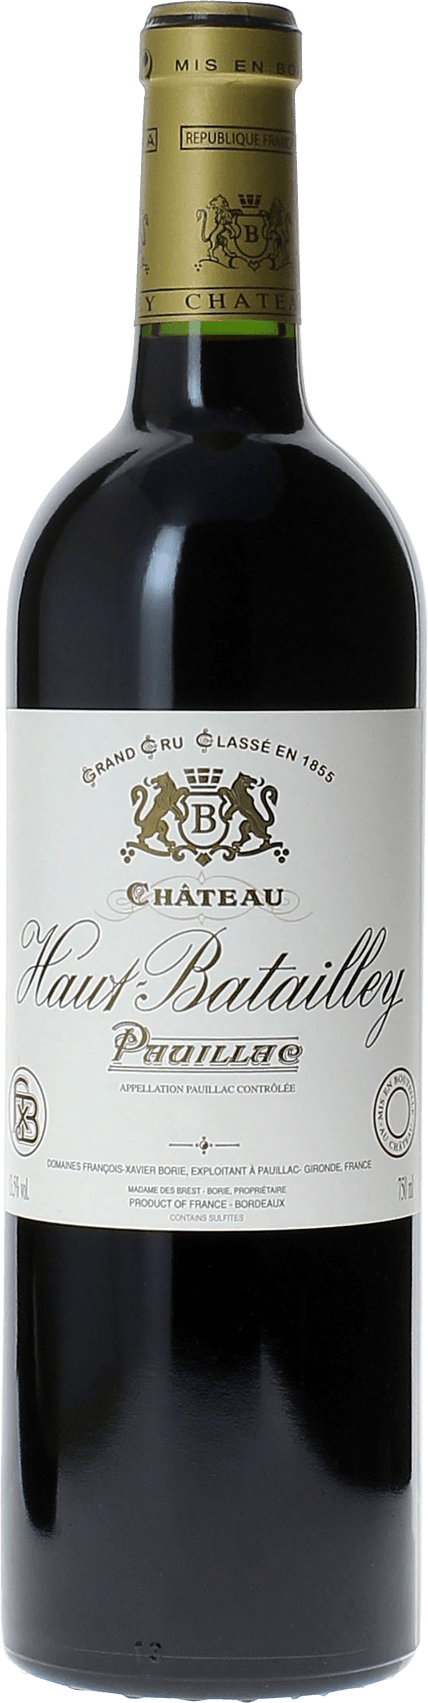 Haut batailley 2015 5 me Grand cru class Pauillac, Bordeaux rouge